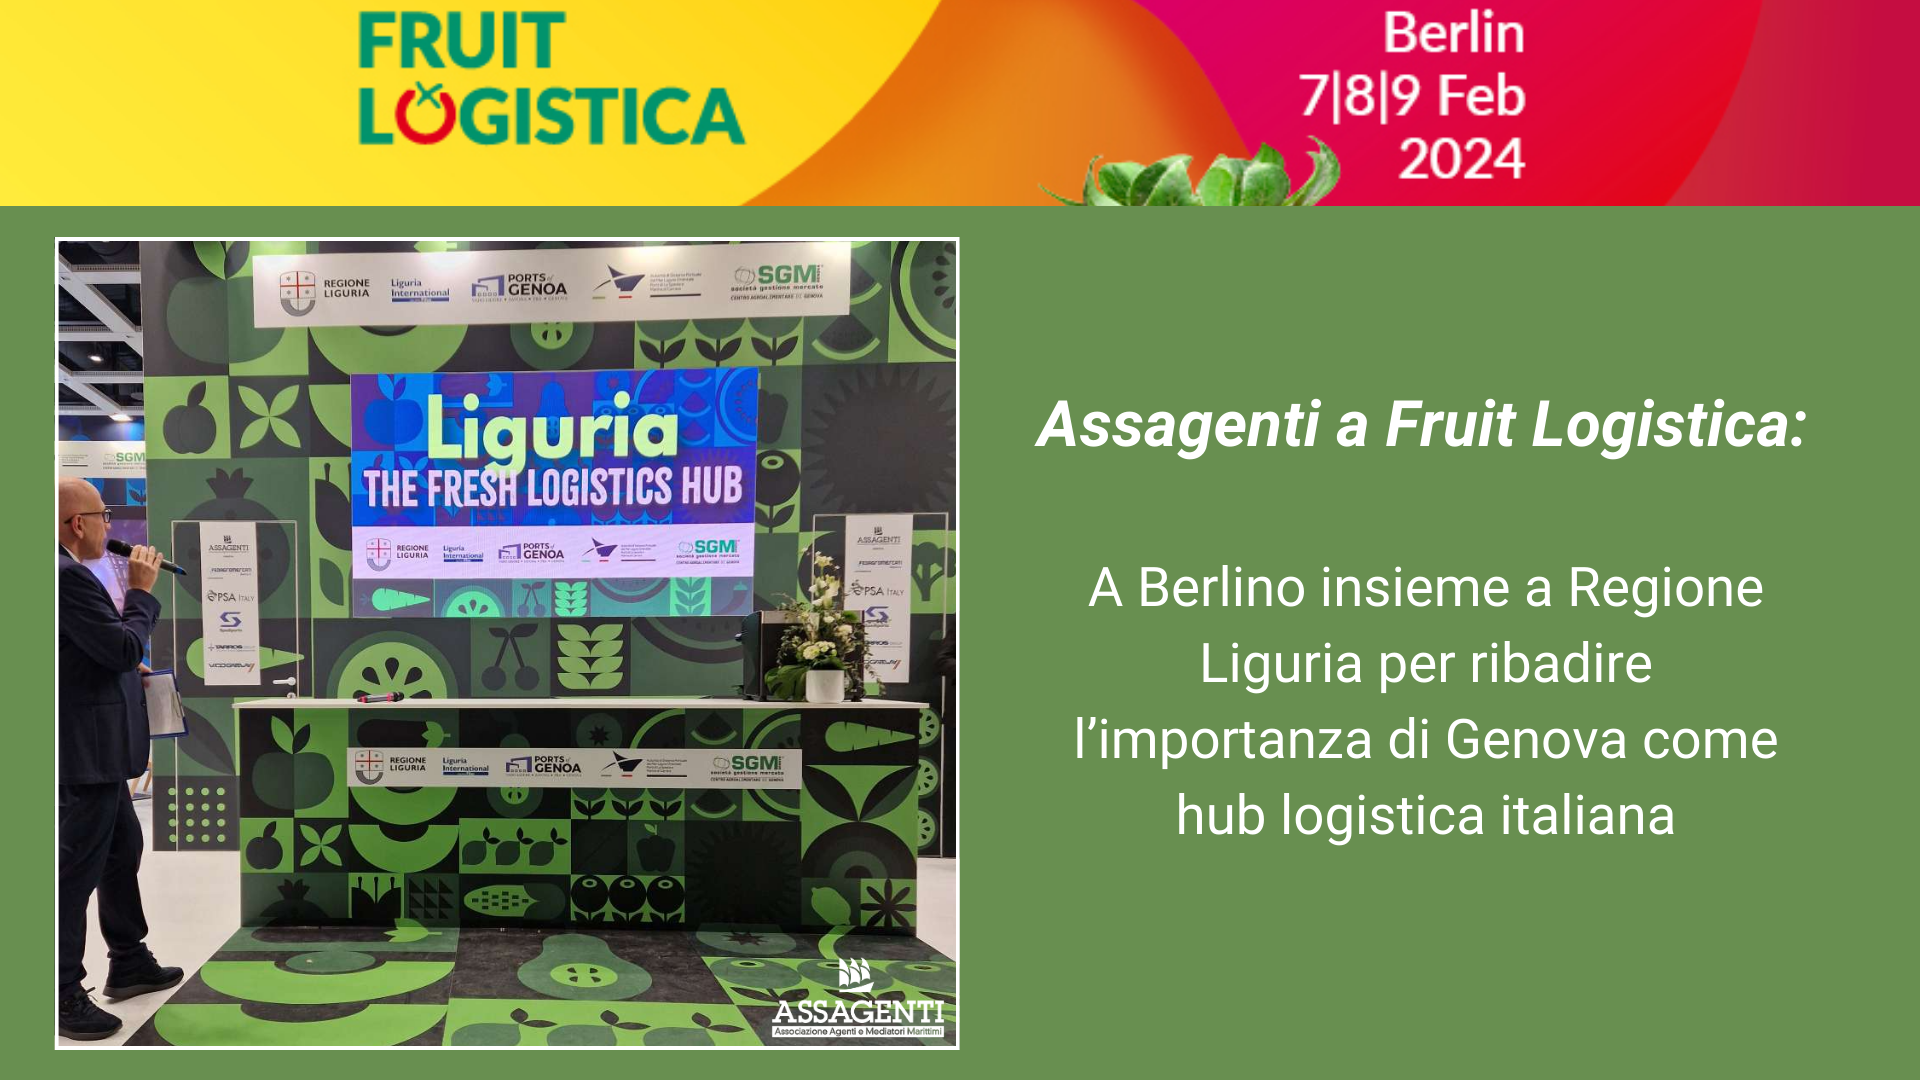 Fruit Logistica: Assagenti partecipa per ribadire l'importanza di Genova nel settore 